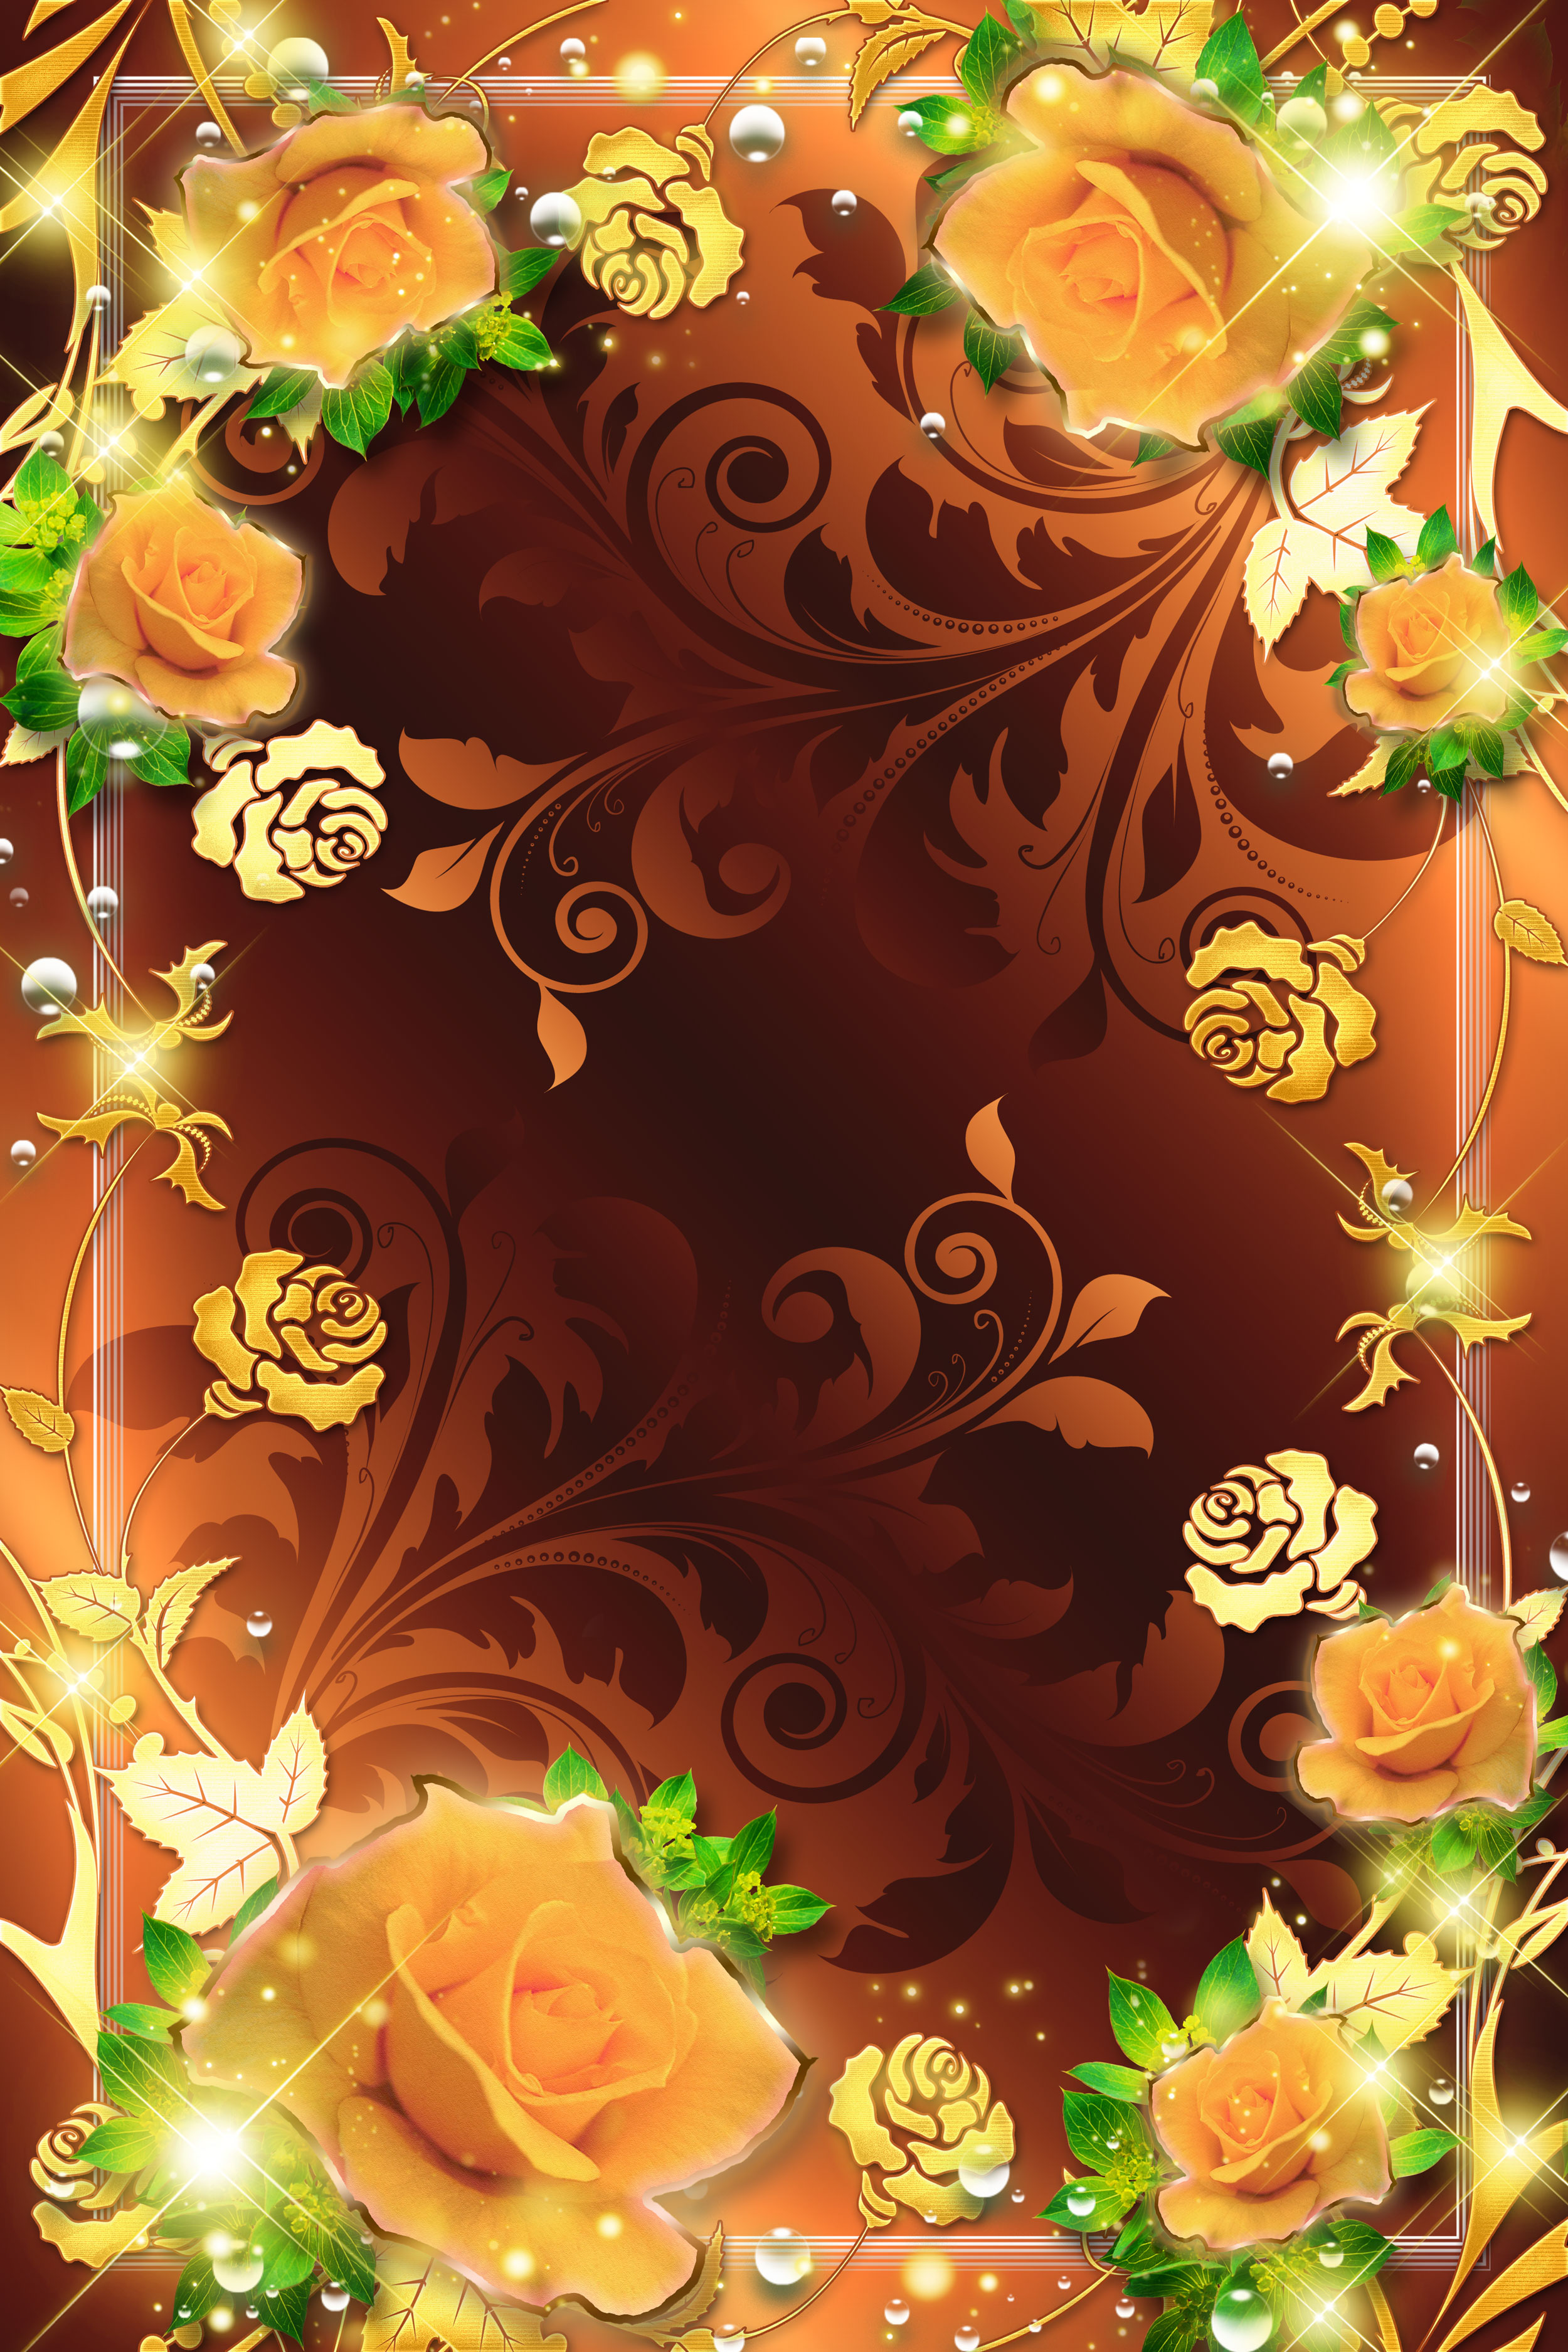 壁紙 背景イラスト 花のフレーム 外枠 No 081 オレンジのバラ 金色